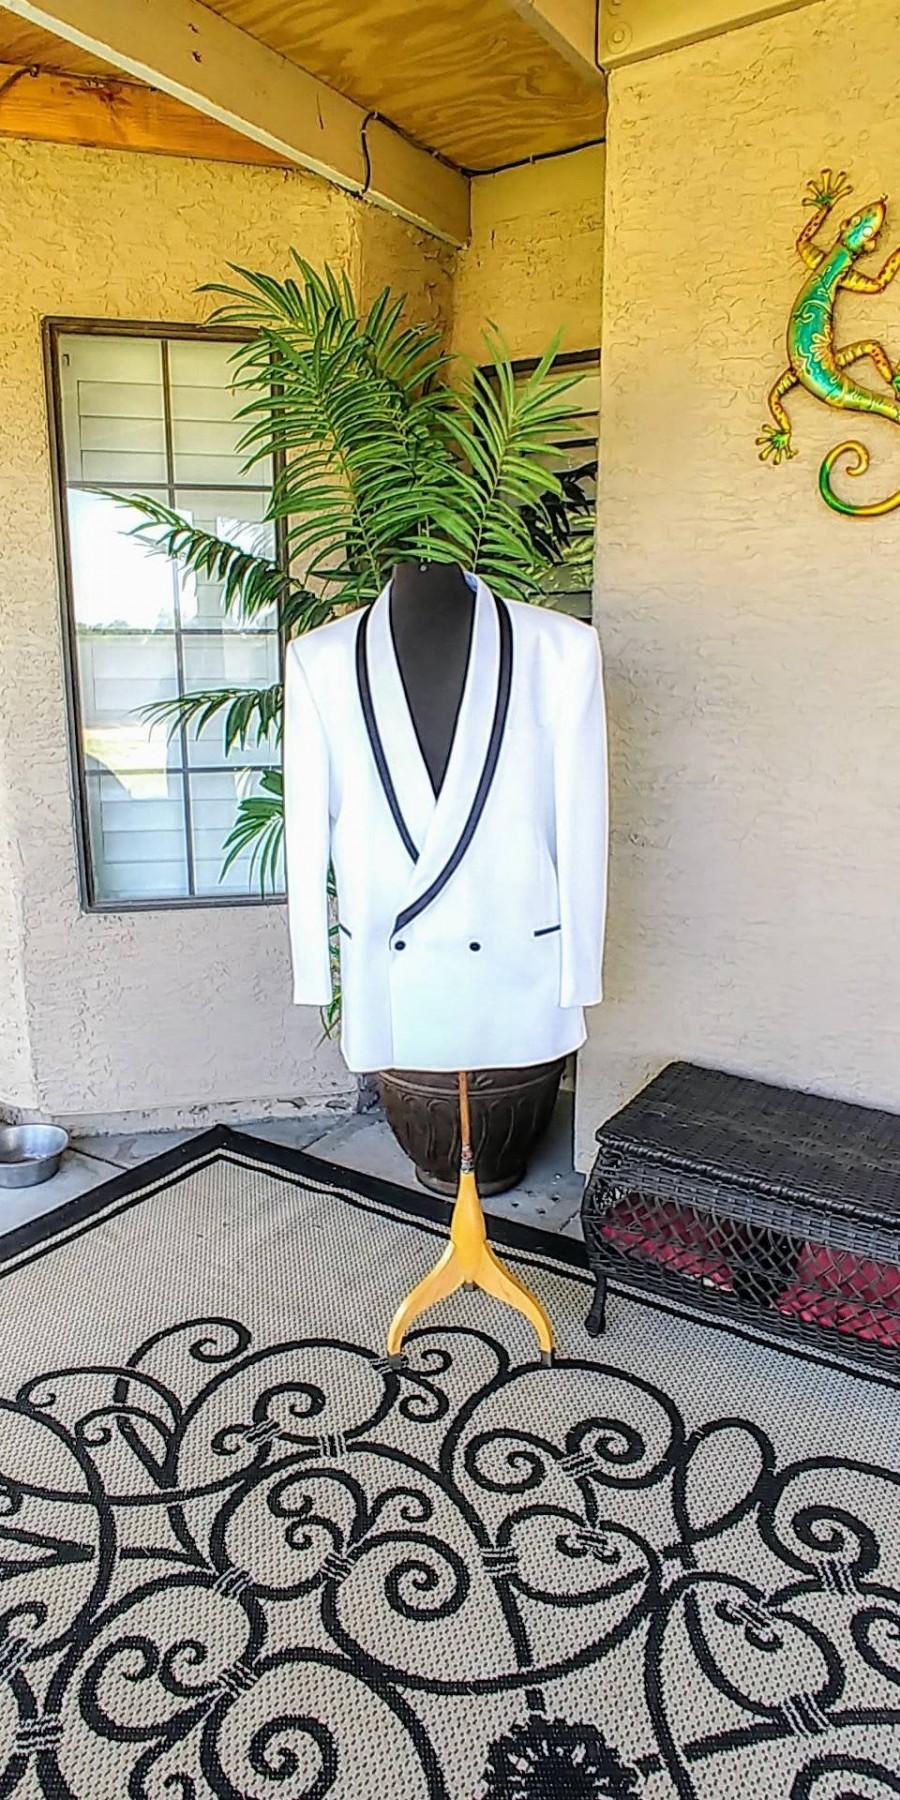 زفاف - Men's White Vintage Tuxedo Jacket. The Formal Wear Collection by Raffinati Made in U.S.A. Beautiful Jacket White with Black Trim. Size 50 L